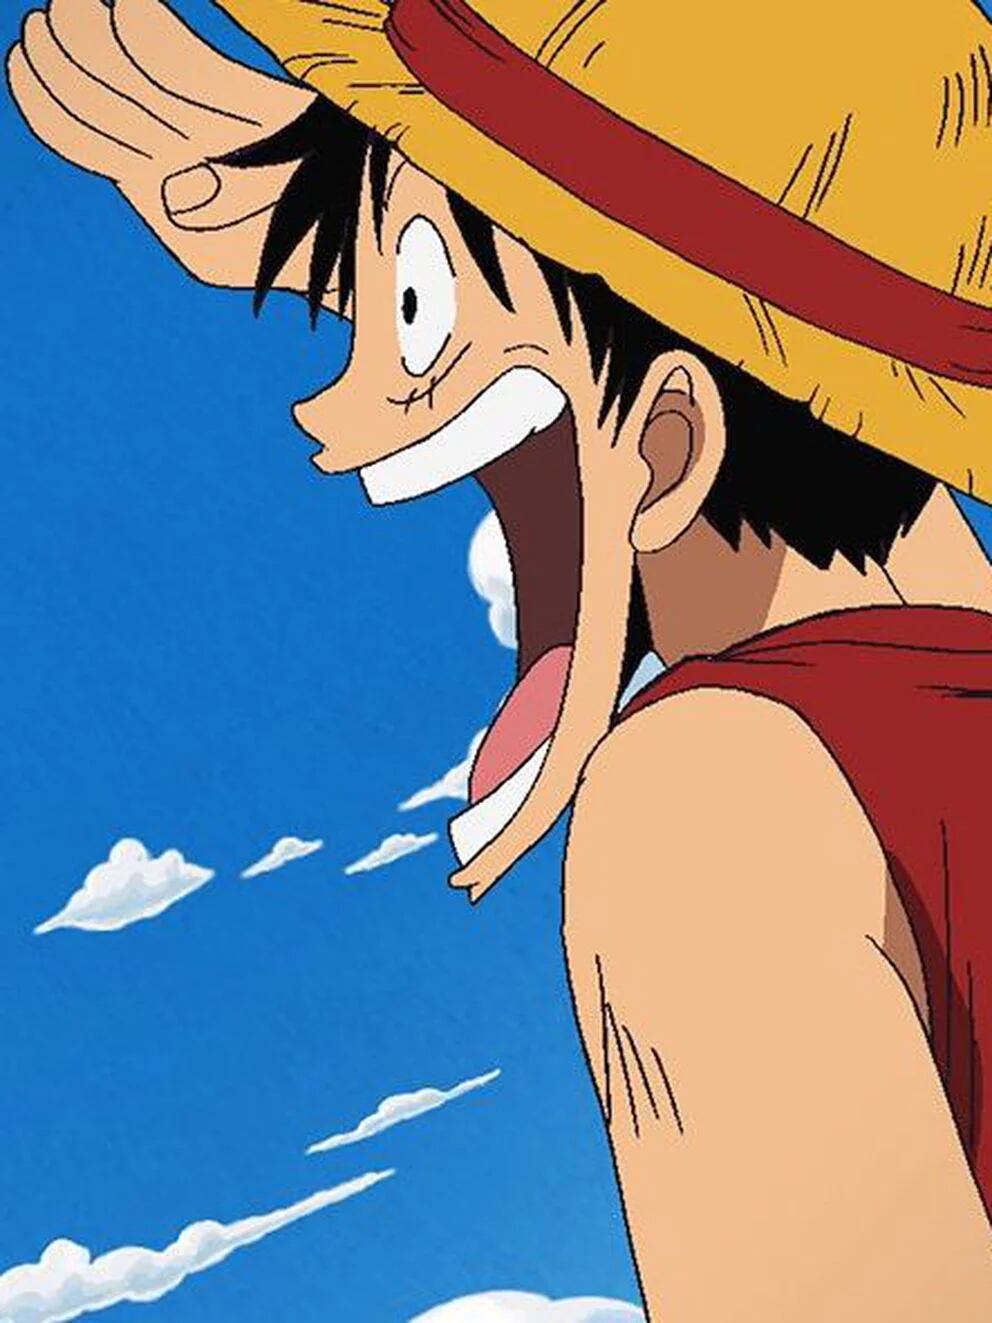 One Piece  Agenda de lançamento dos próximos episódios (MAIO/JUNHO)